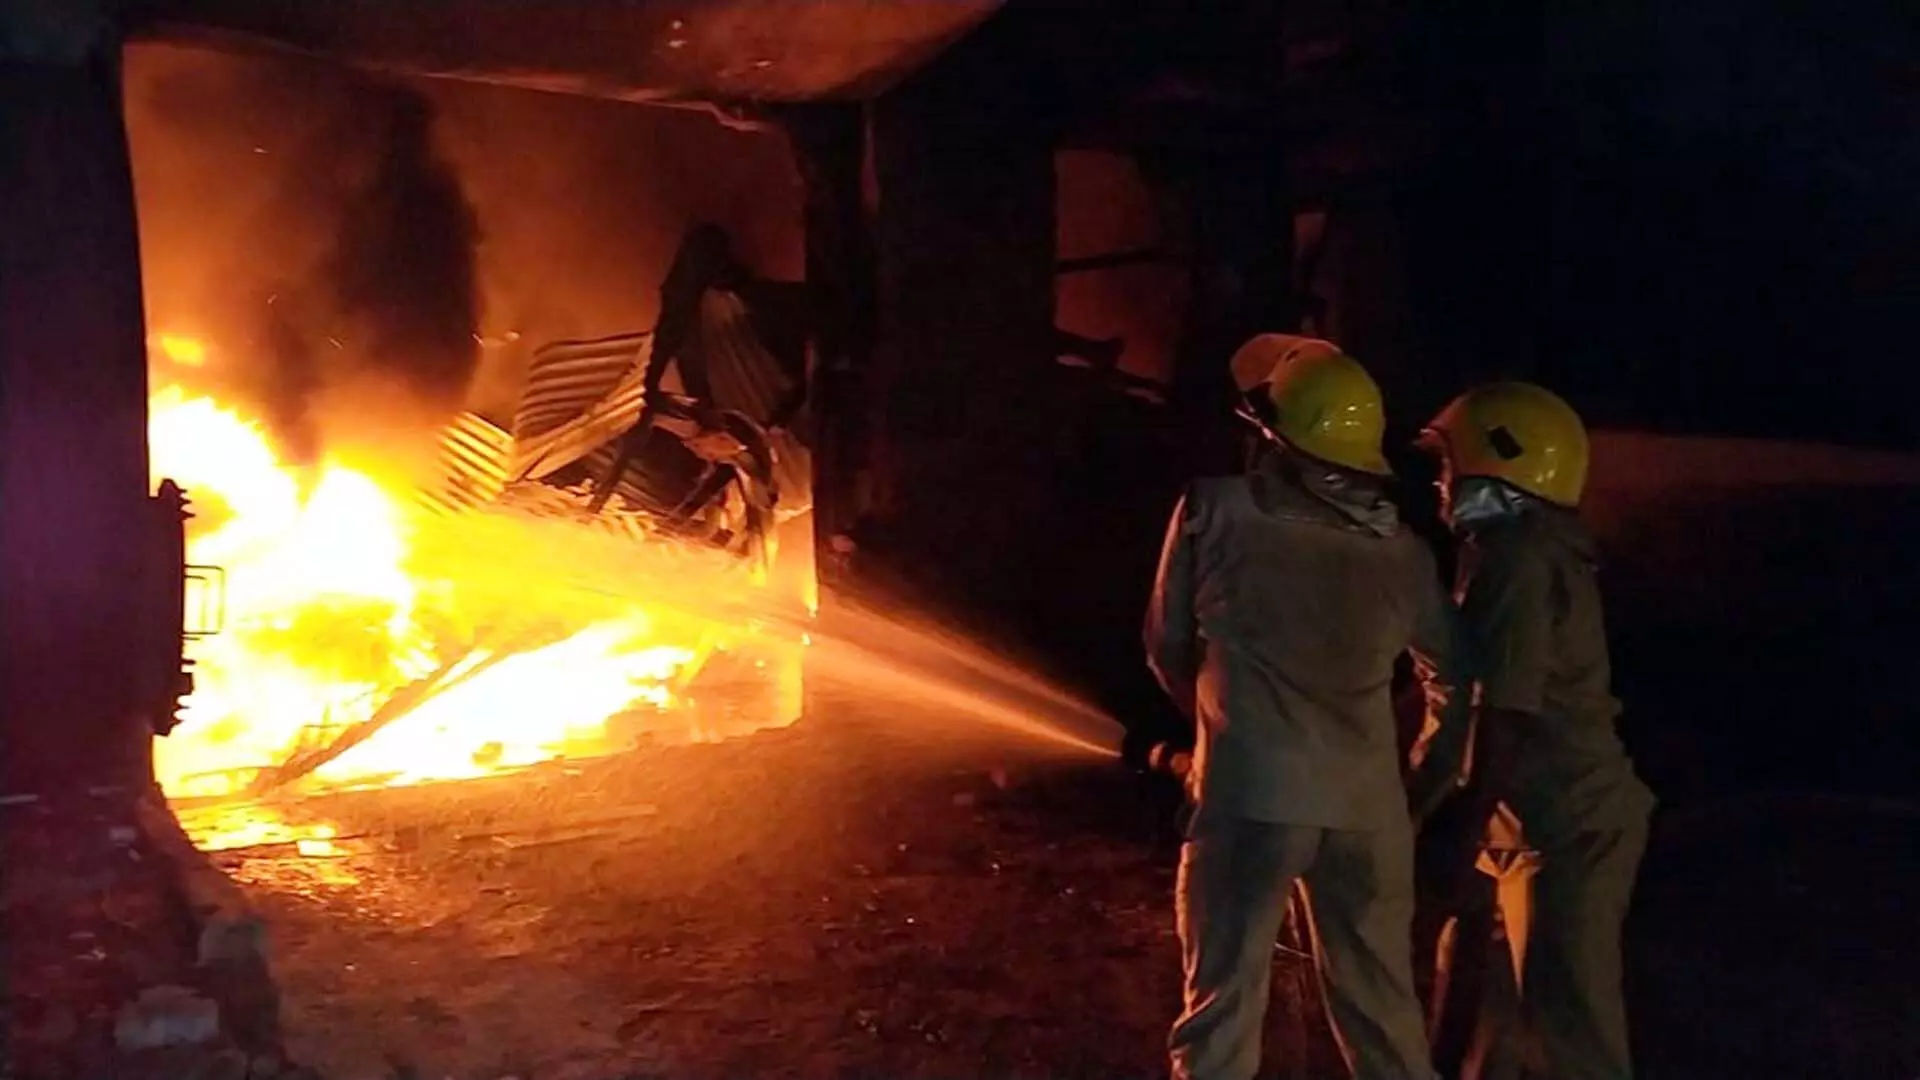 Ghaziabad : गत्ता फैक्टरी में लगी भीषण आग, हथौड़े से तोड़ा शटर